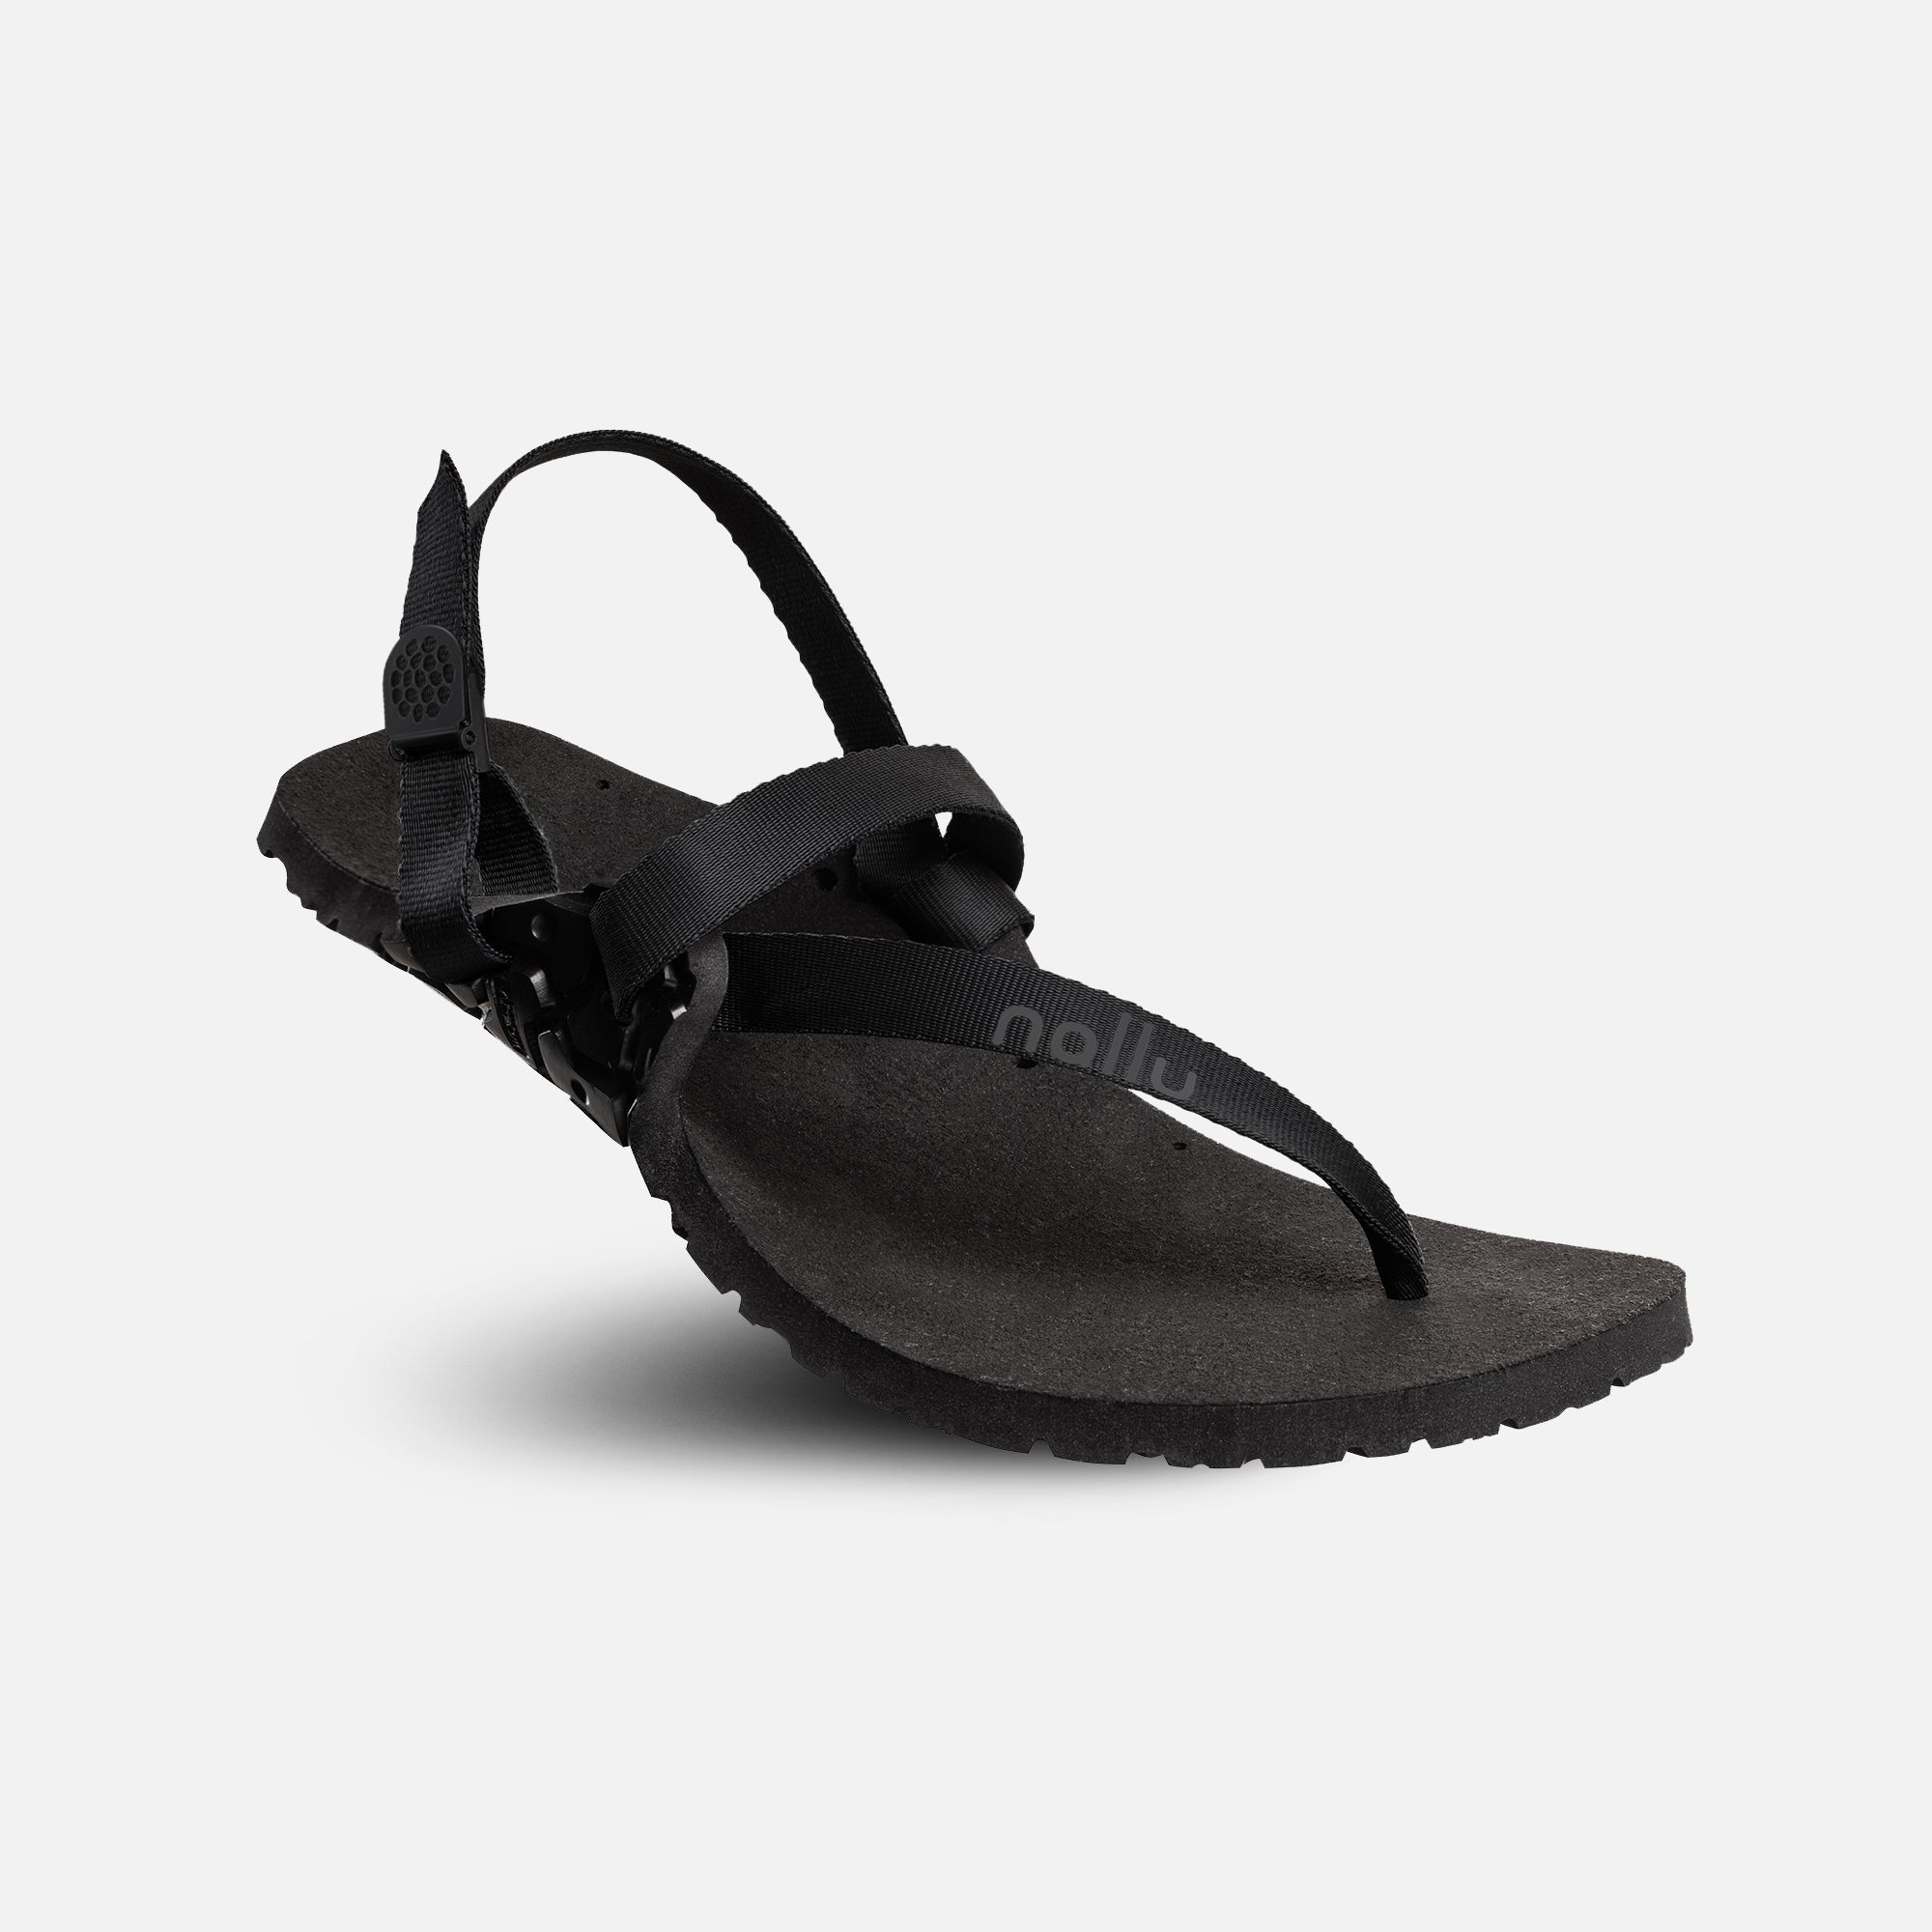 Nallu Journey barfods sandaler til kvinder og mænd i farven black, vinklet